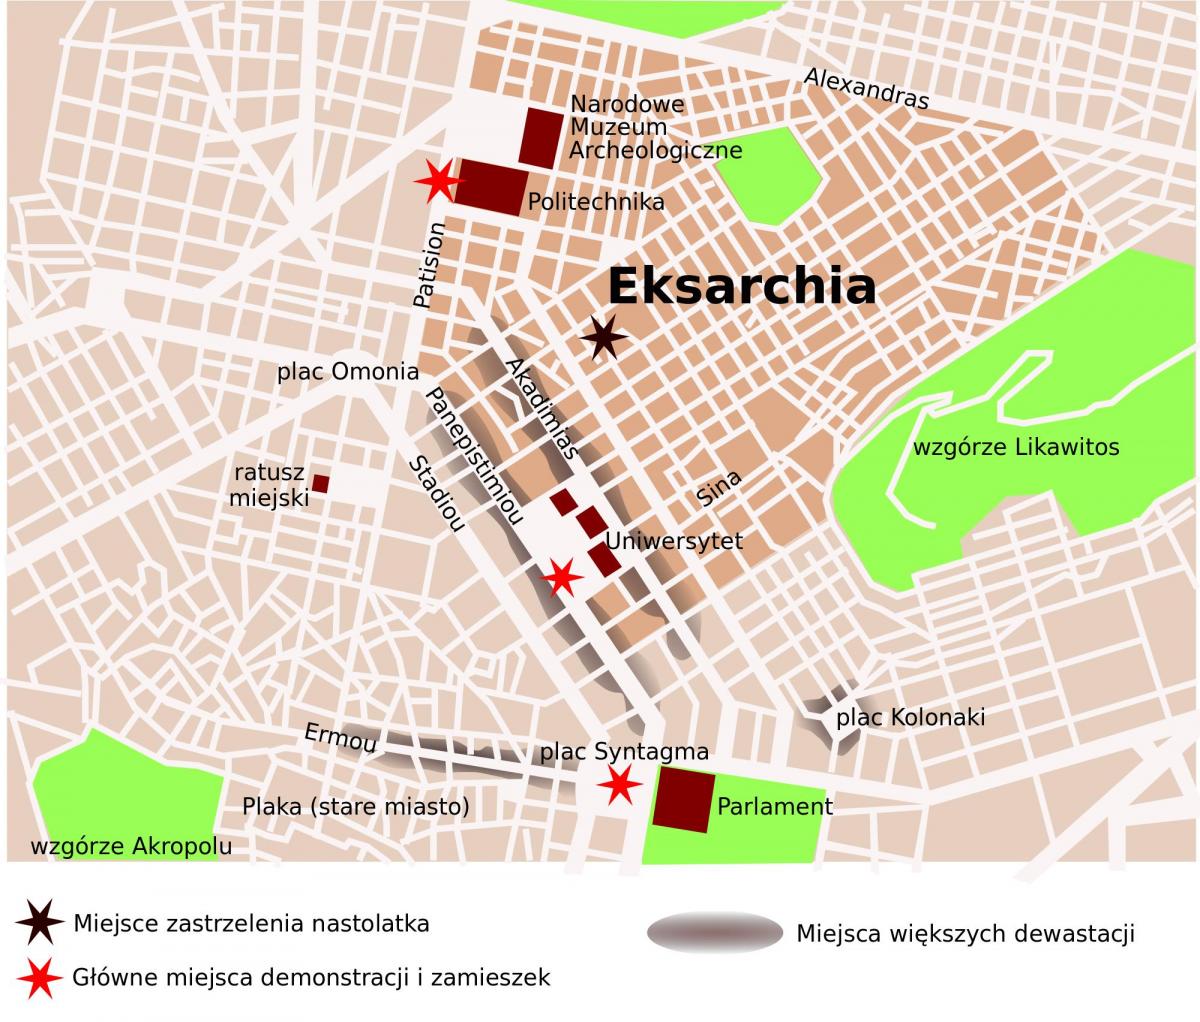 خريطة إيكزاركيا أثينا